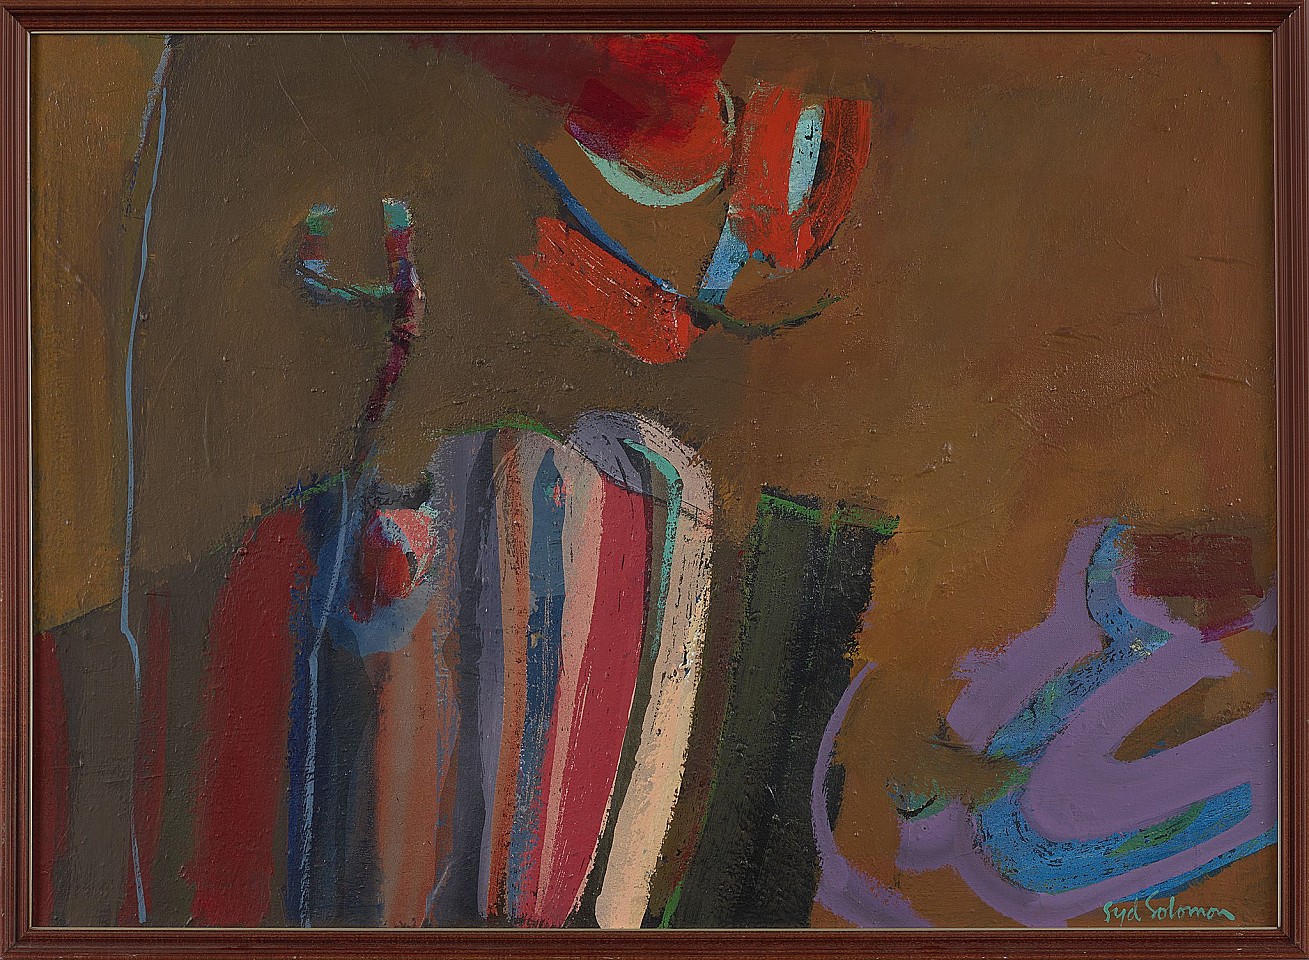 Syd Solomon, Coastatoo, 1967
Oil on canvas, 29 1/2 x 41 1/2 in. (74.9 x 105.4 cm)
© Estate of Syd Solomon
SOL-00122